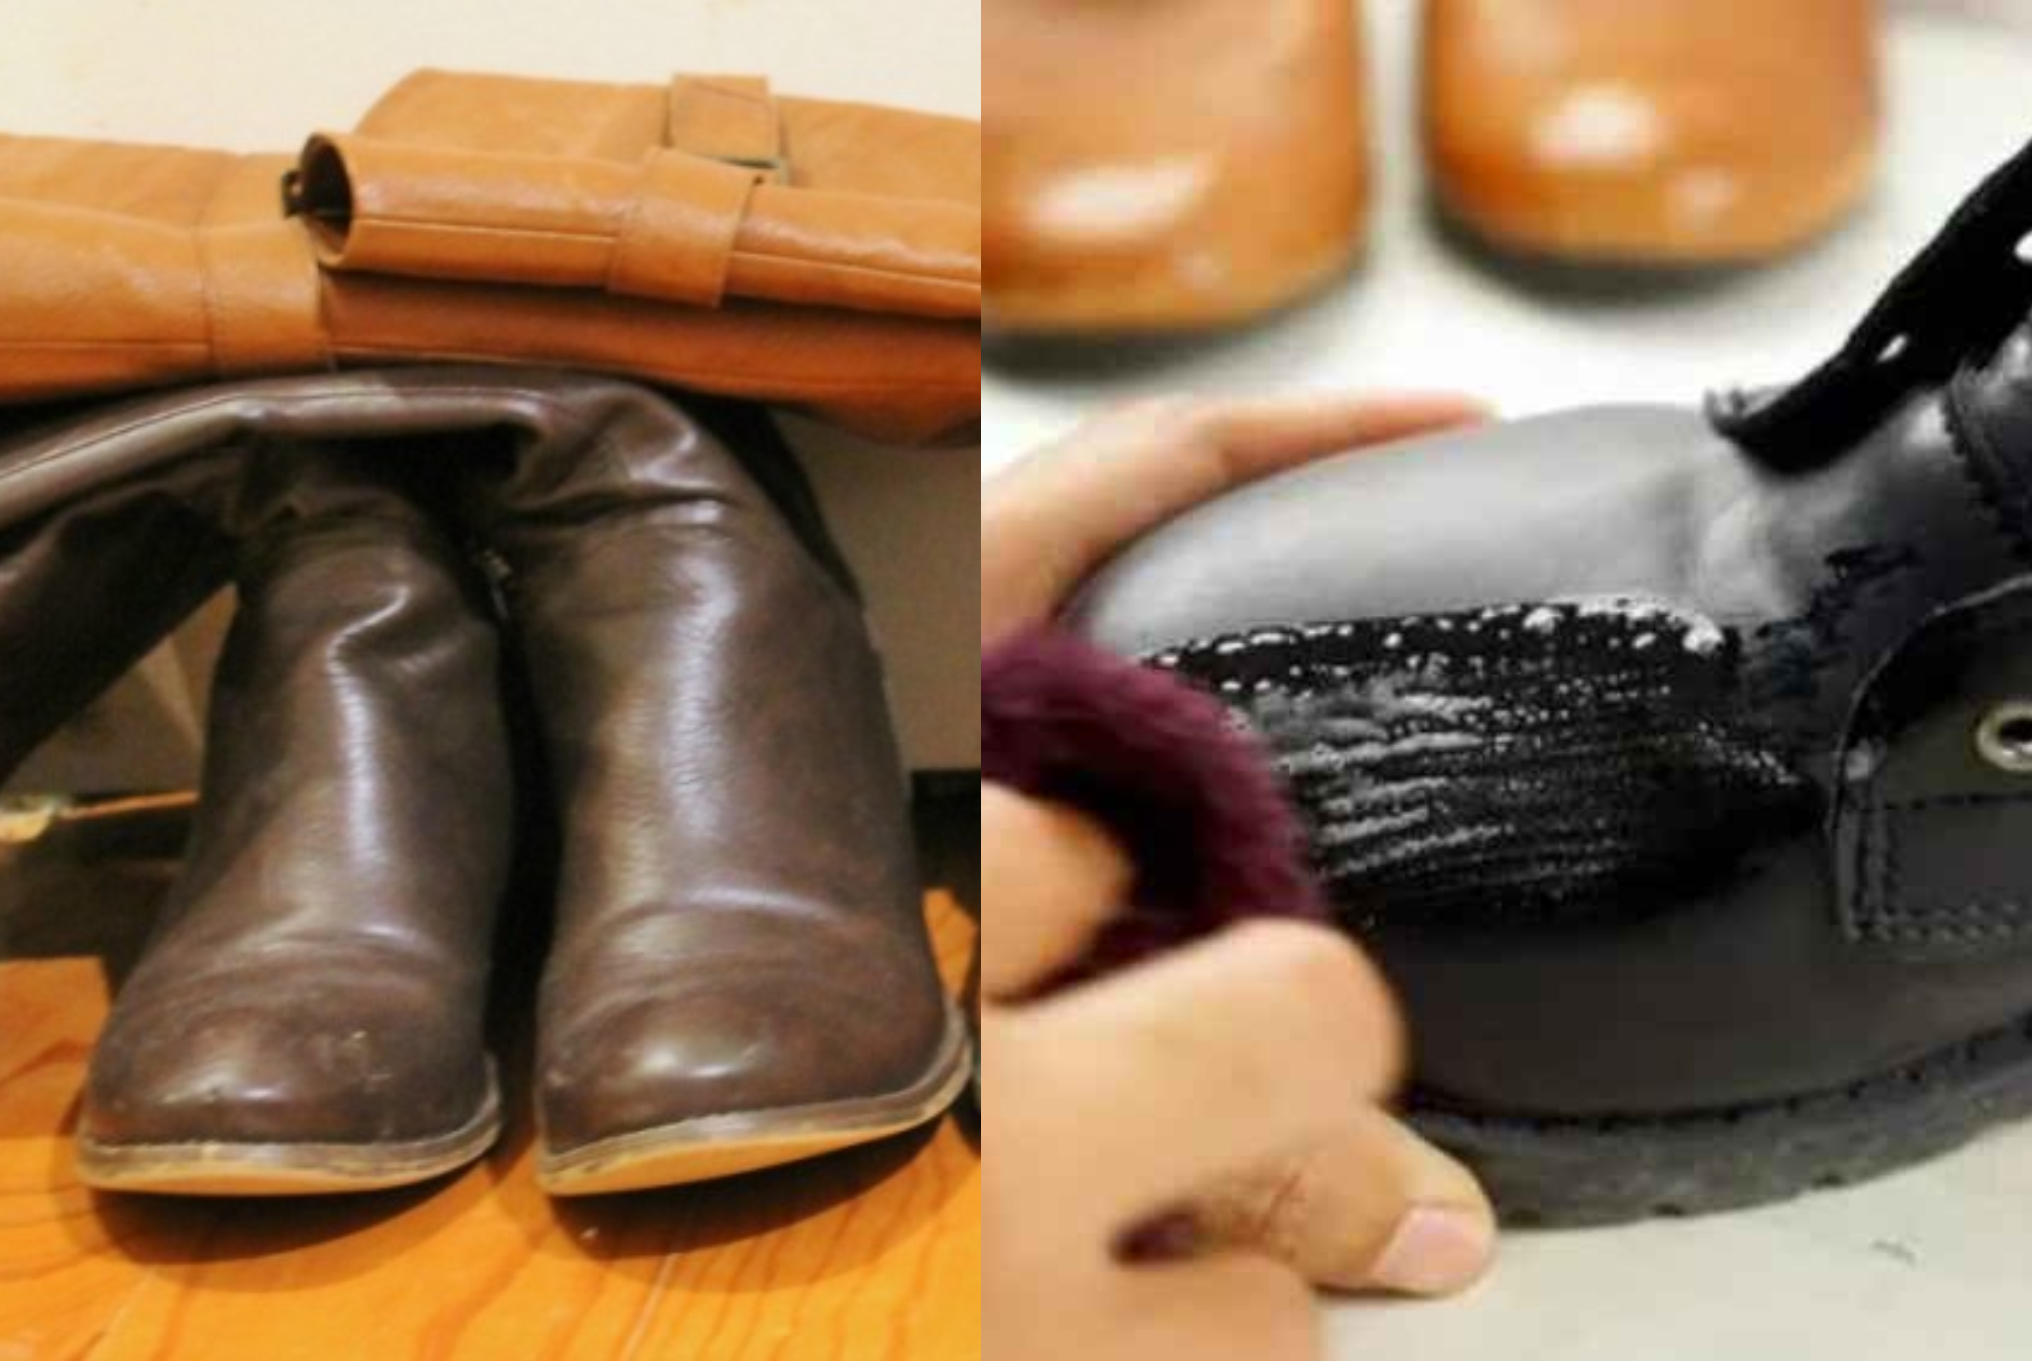 Λάσπες τσακίσματα και θάμπωμα στις δερμάτινες μπότες: Πως να τις καθαρίσεις και να τις κάνεις σαν καινούριες